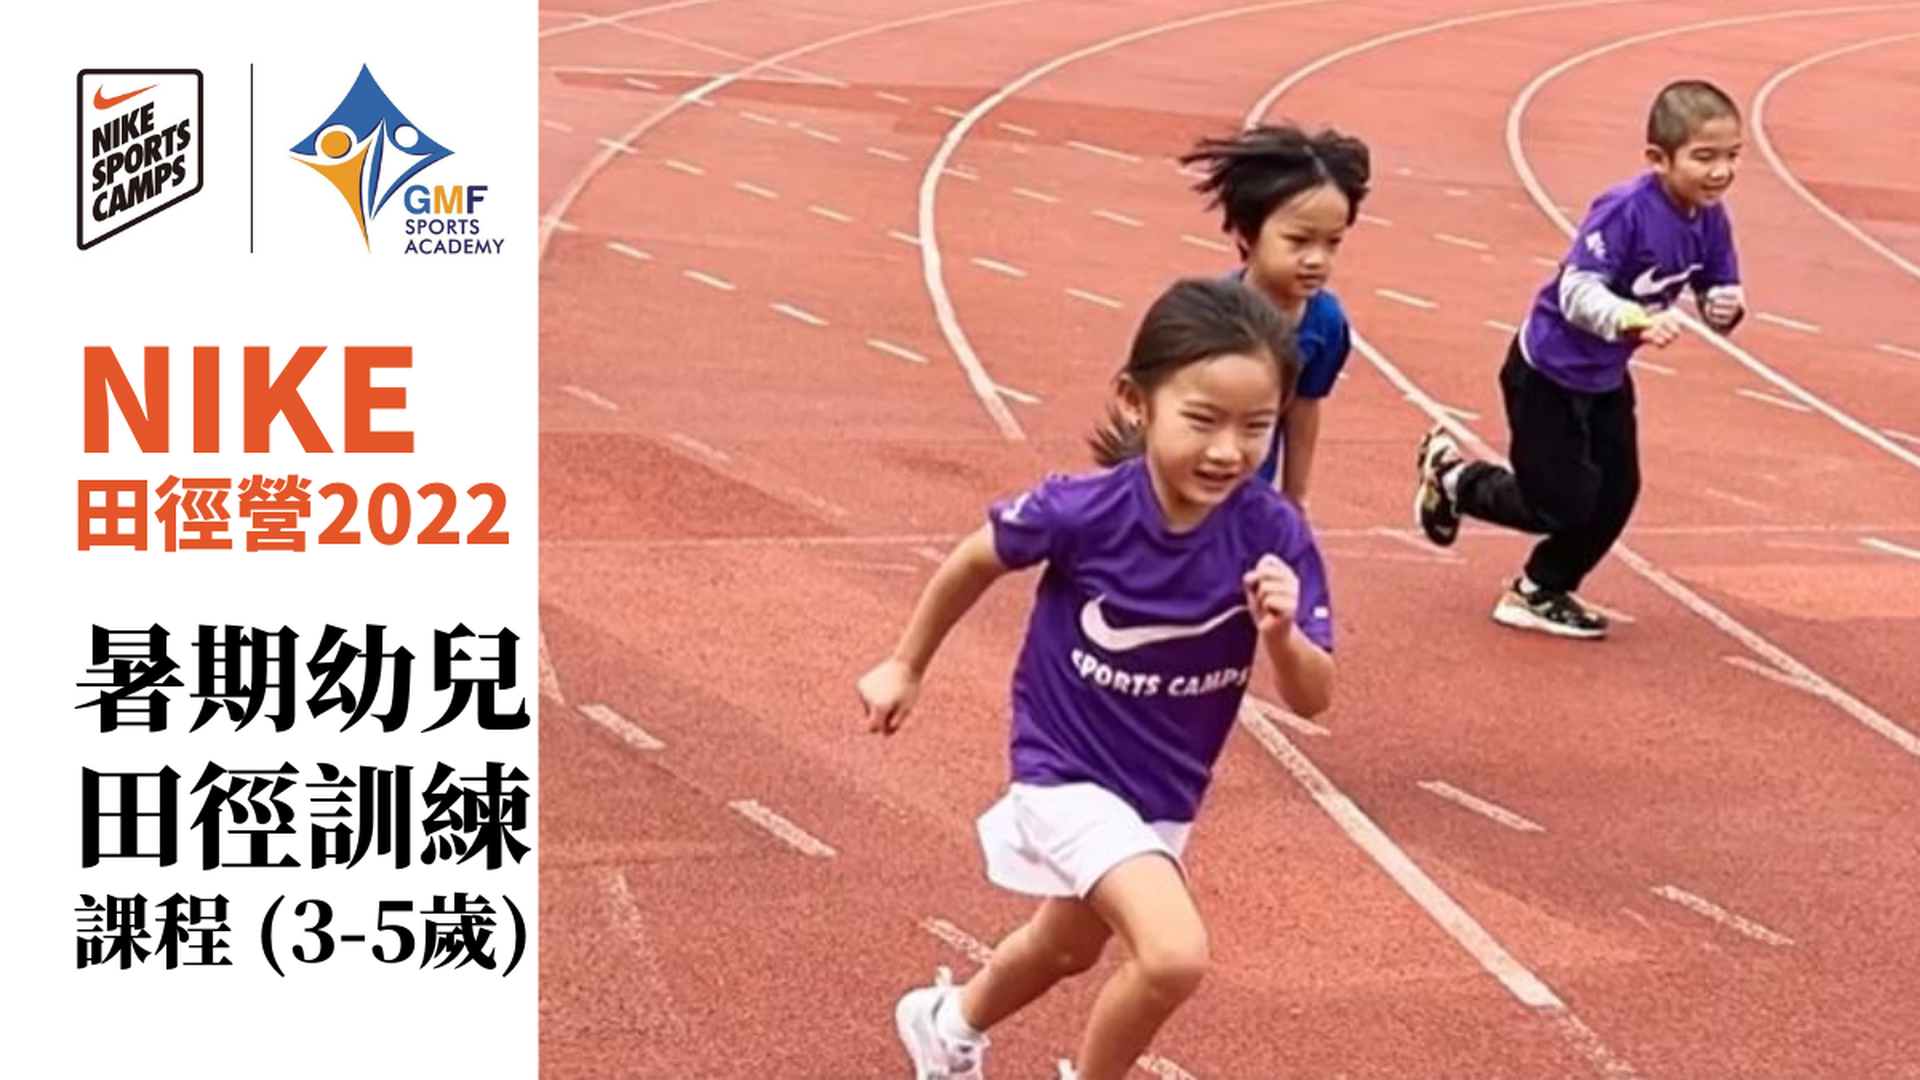 NIKE 田徑營 2022 - 暑期幼兒田徑訓練課程 (3-6歲)